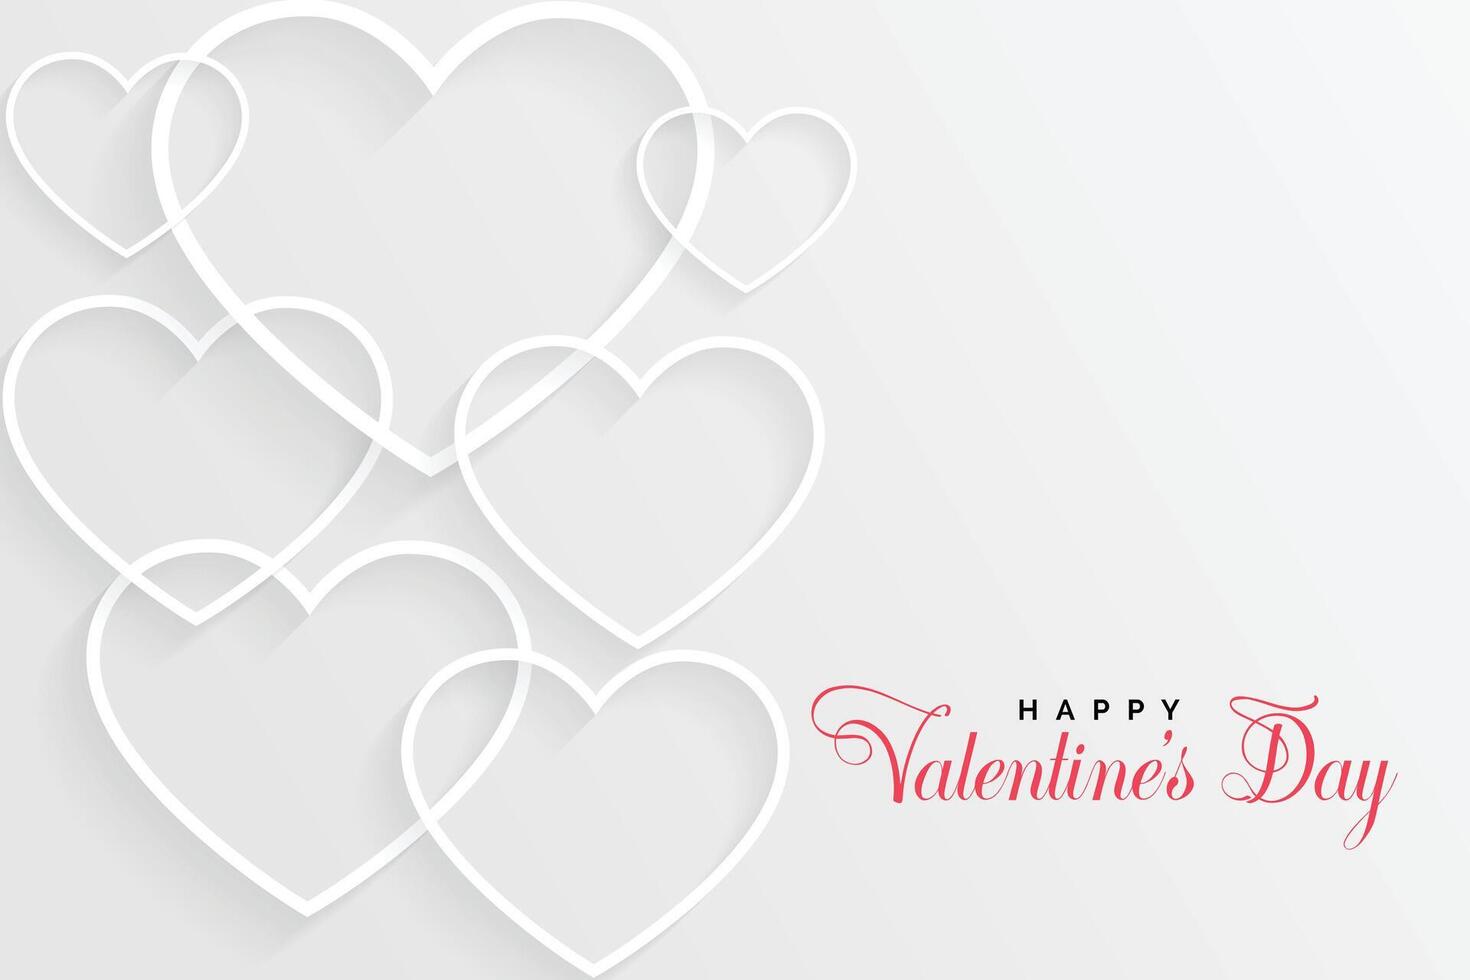 wit valentijnsdag dag kaart met lijn harten vector